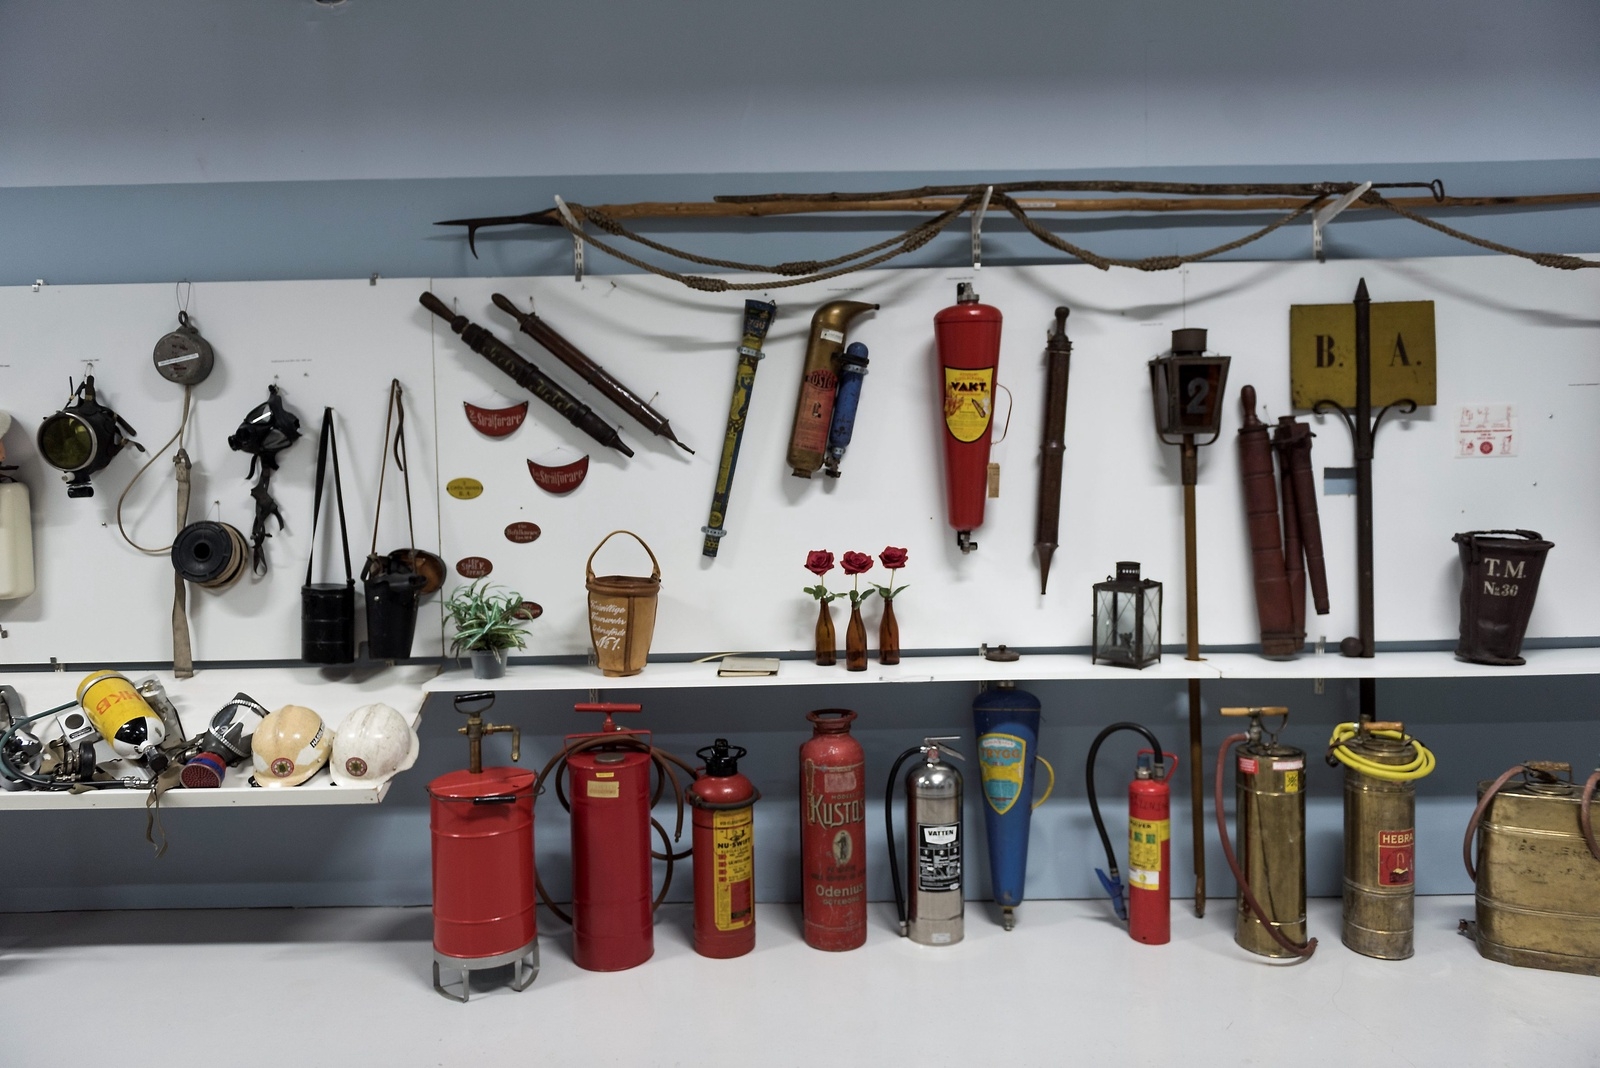 Hässleholms museum har en gedigen samling av brandkårens utrustning, som sträcker sig mer än 100 år tillbaka.